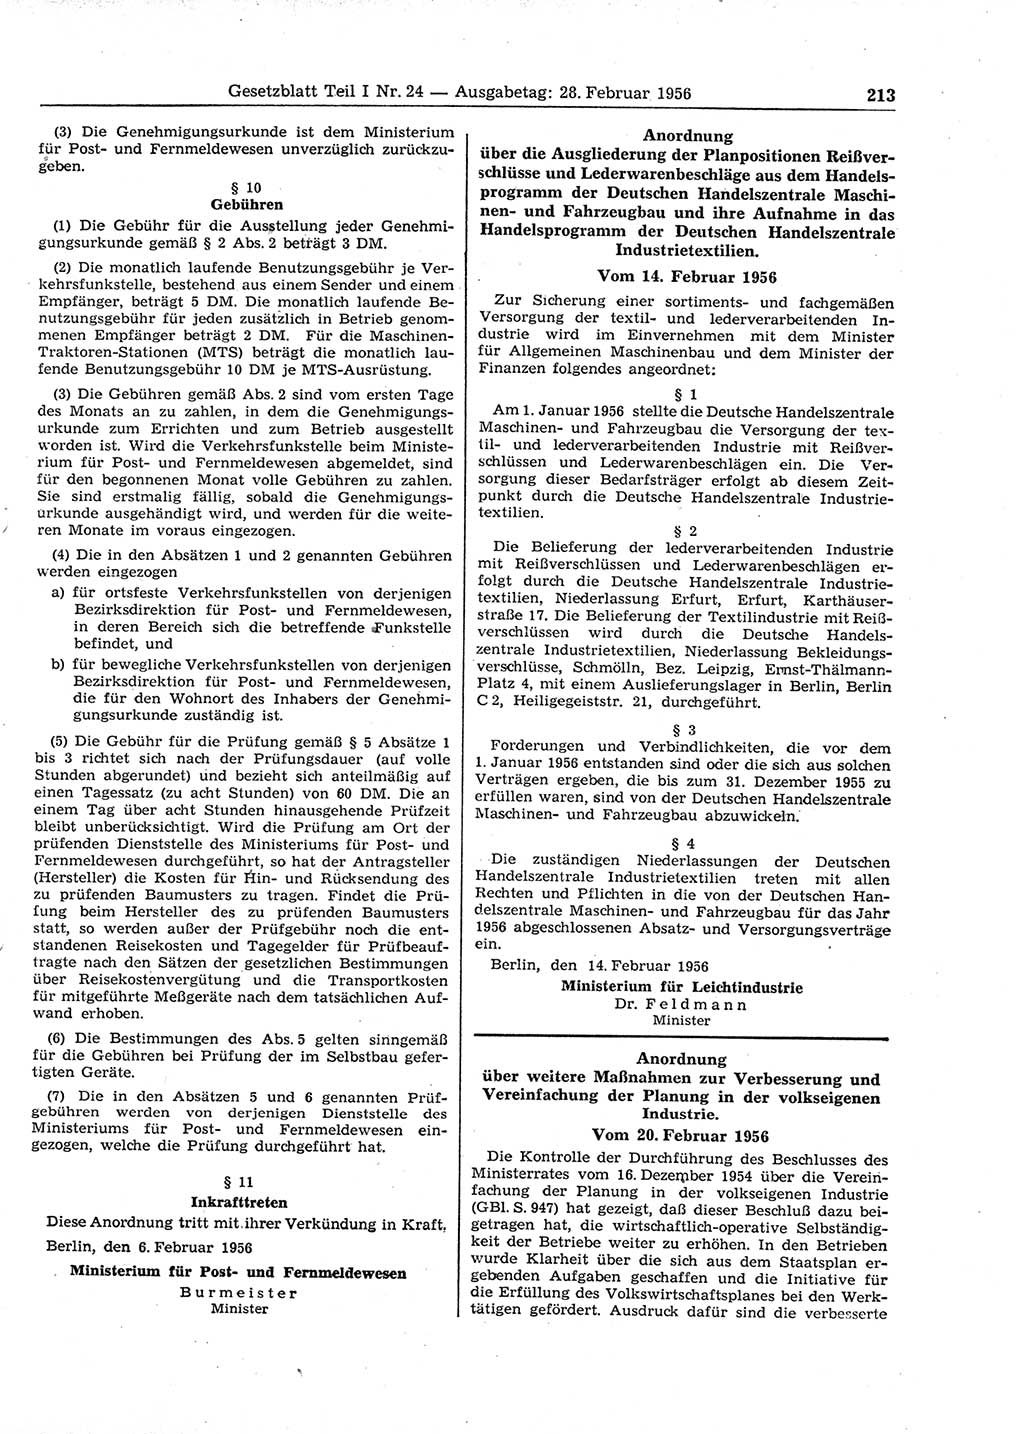 Gesetzblatt (GBl.) der Deutschen Demokratischen Republik (DDR) Teil Ⅰ 1956, Seite 213 (GBl. DDR Ⅰ 1956, S. 213)